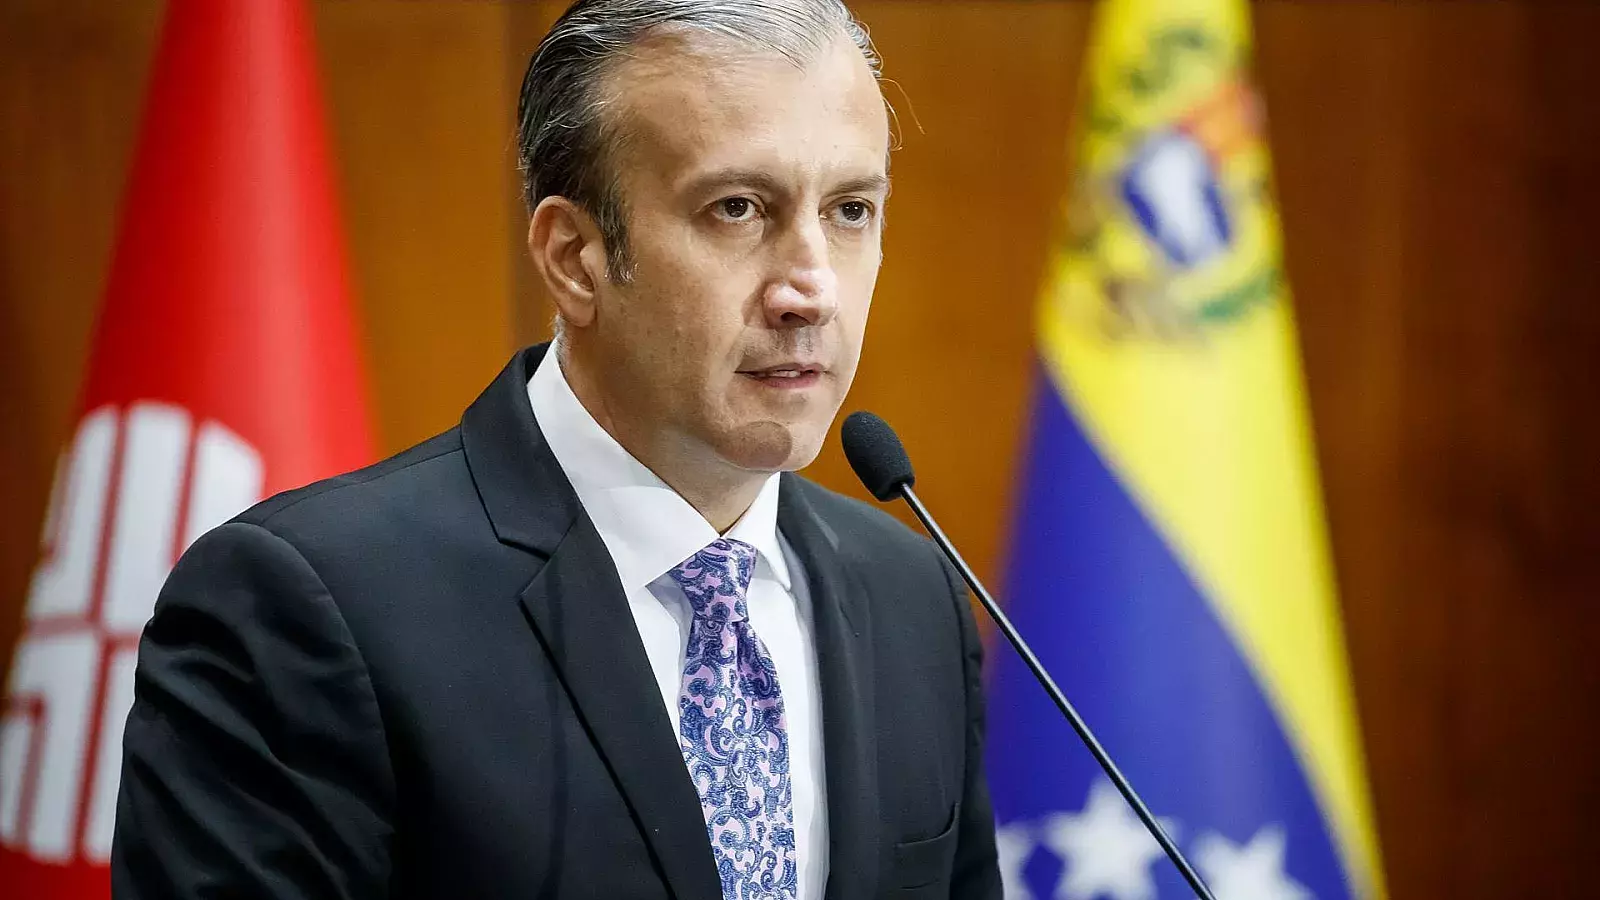 Renuncia el ministro de Petróleo de la dictadura de Venezuela ante denuncias de corrupción